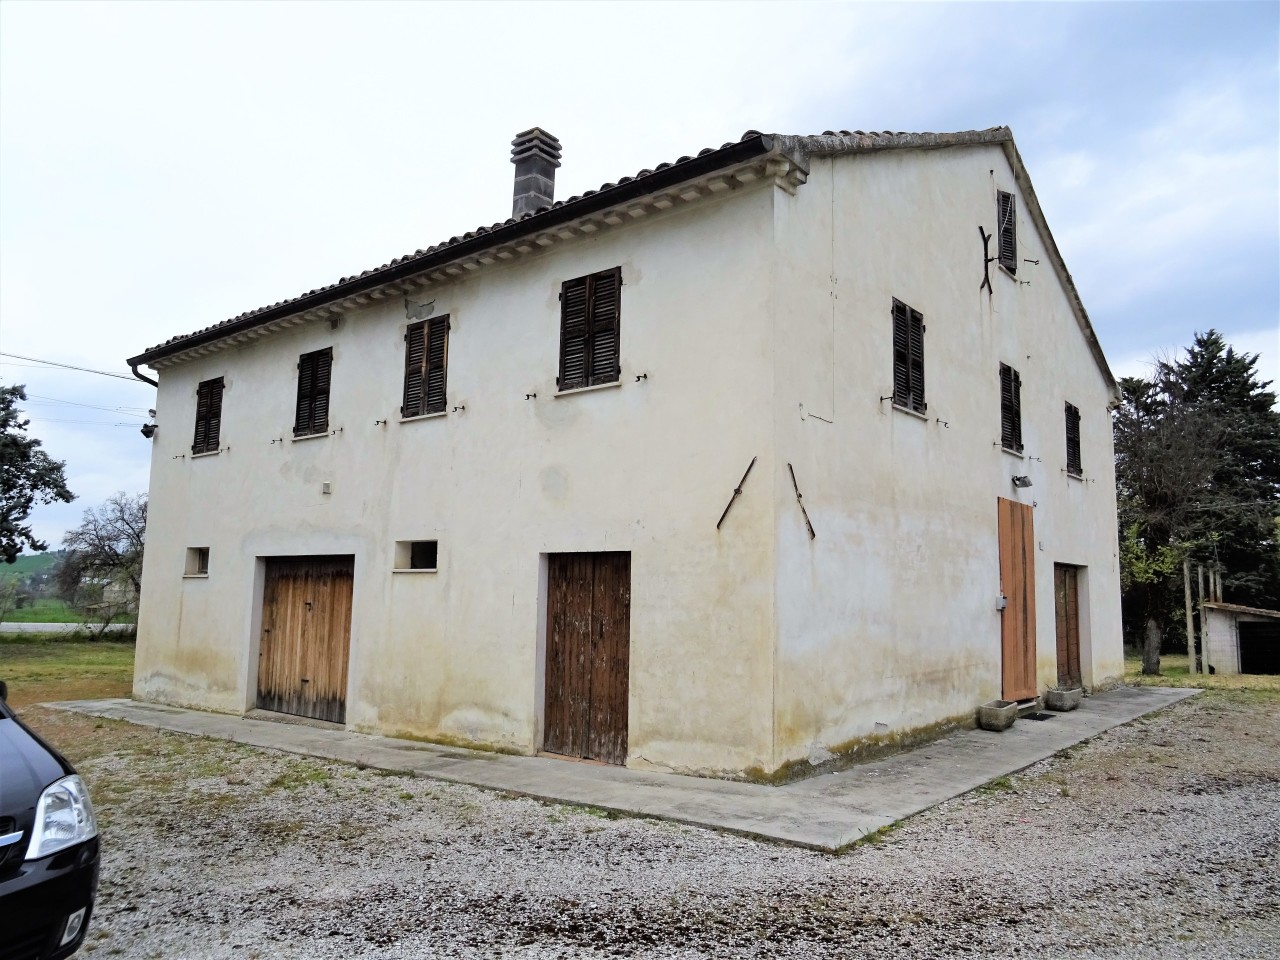 Rustico / Casale in vendita a Corinaldo, 6 locali, prezzo € 120.000 | PortaleAgenzieImmobiliari.it